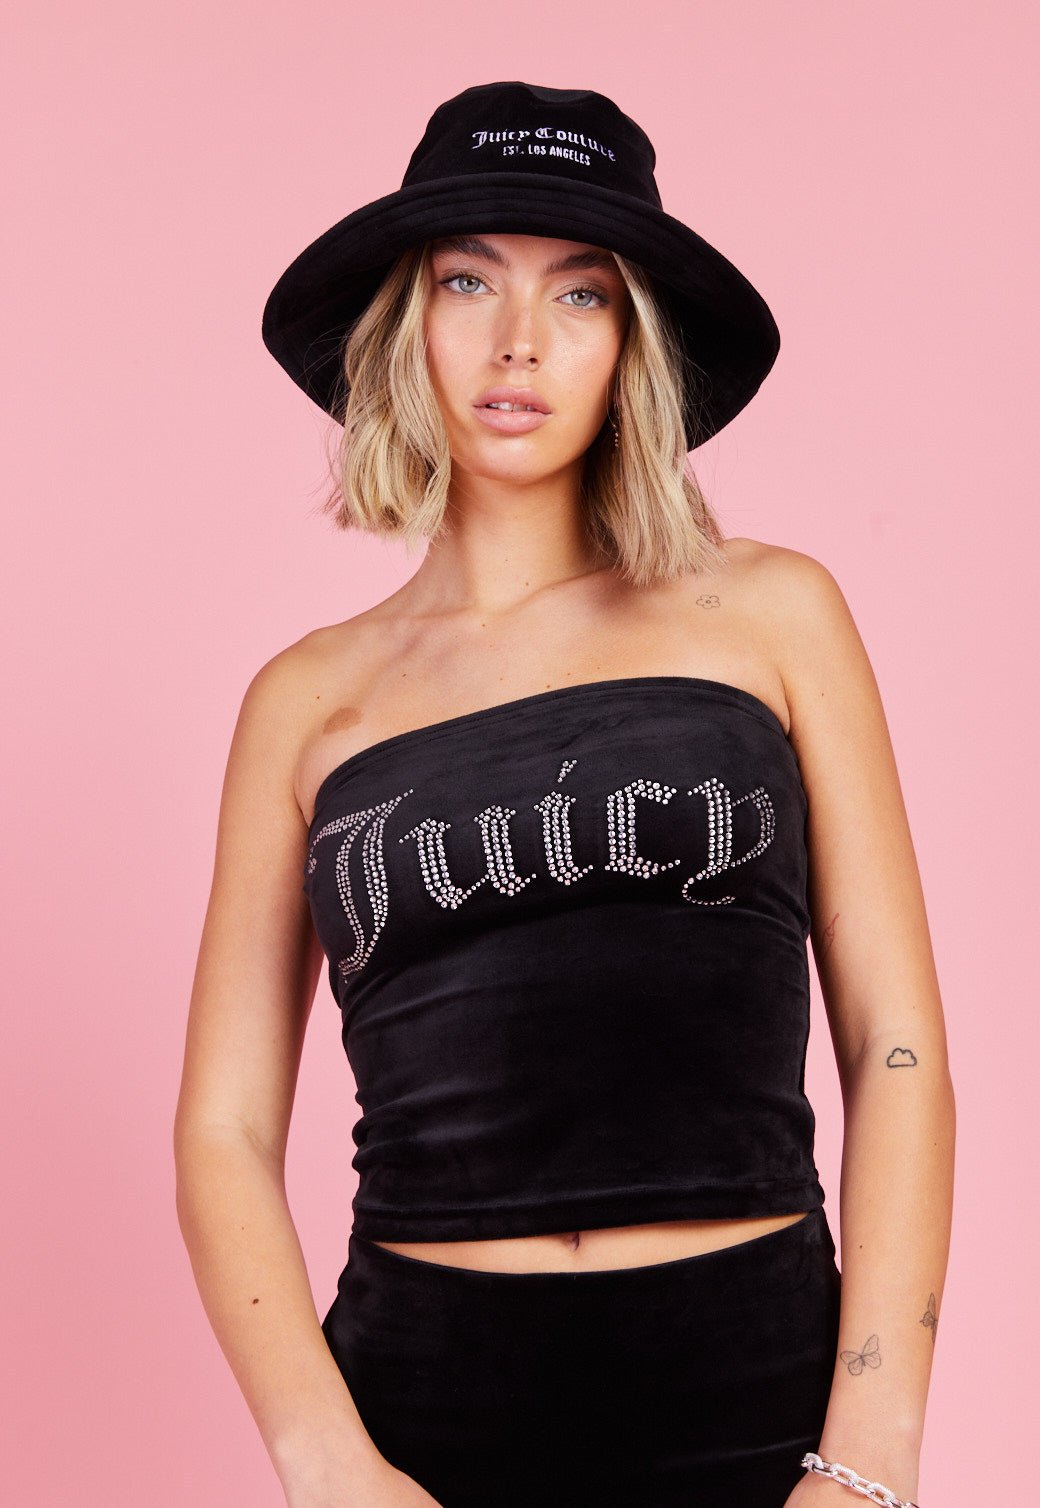 כובע באקט קטיפה לנשים - Juicy Couture